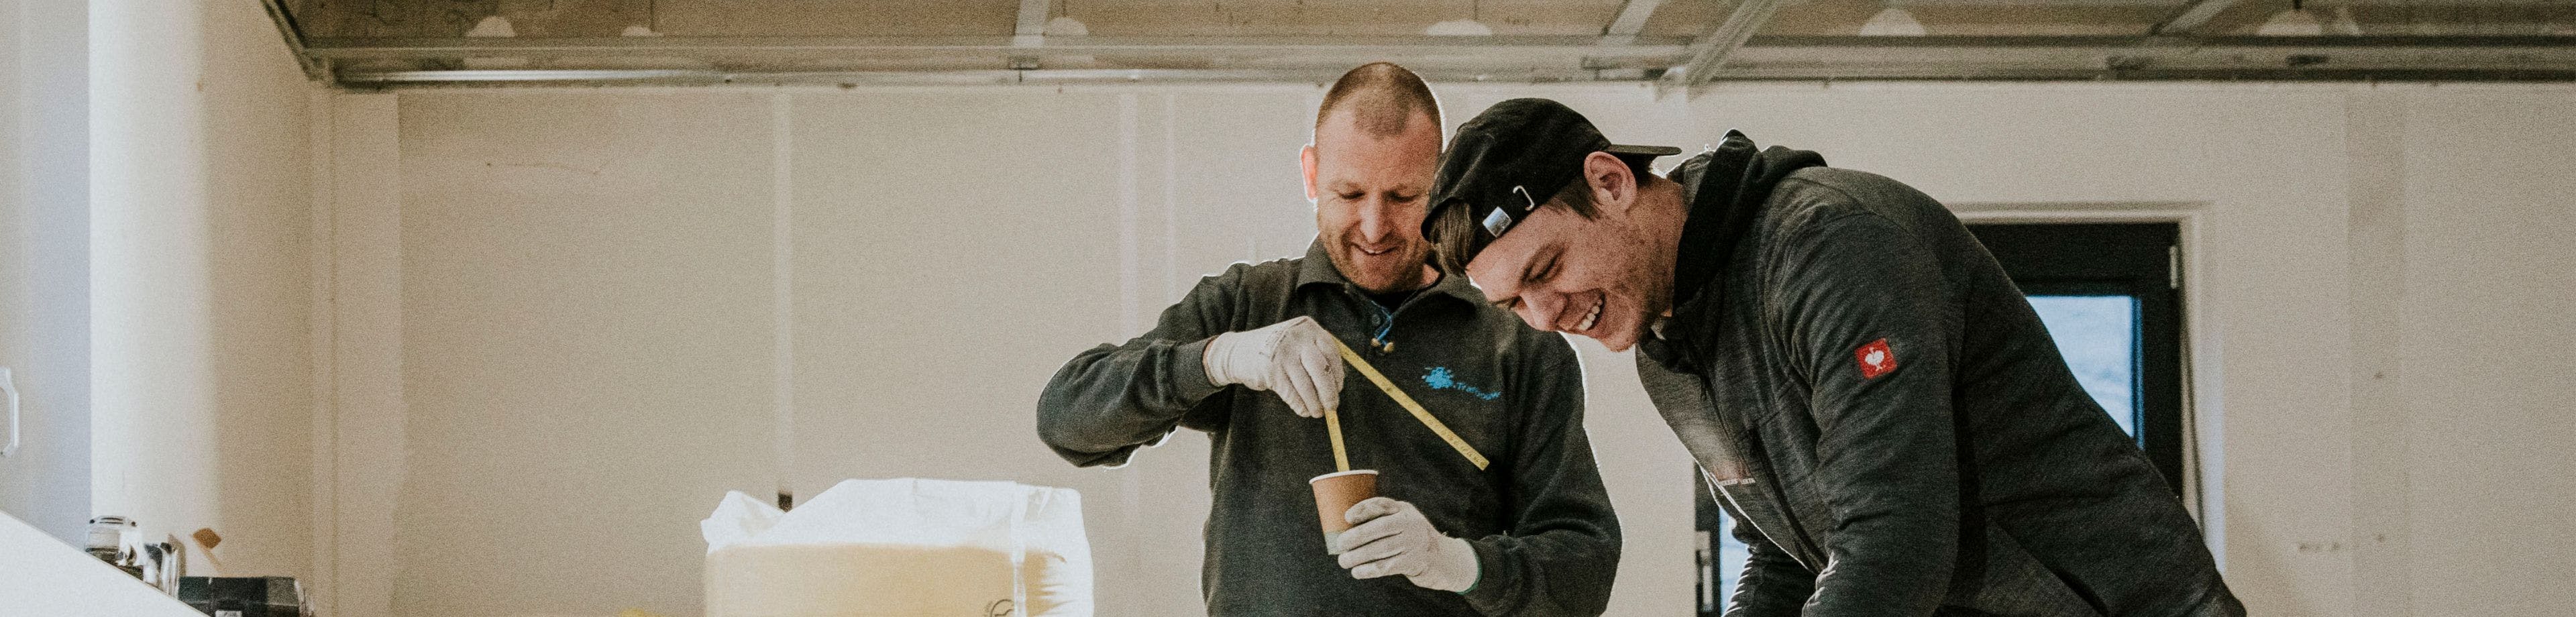 2 jonge mannen lachen en drinken koffie op de bouw.